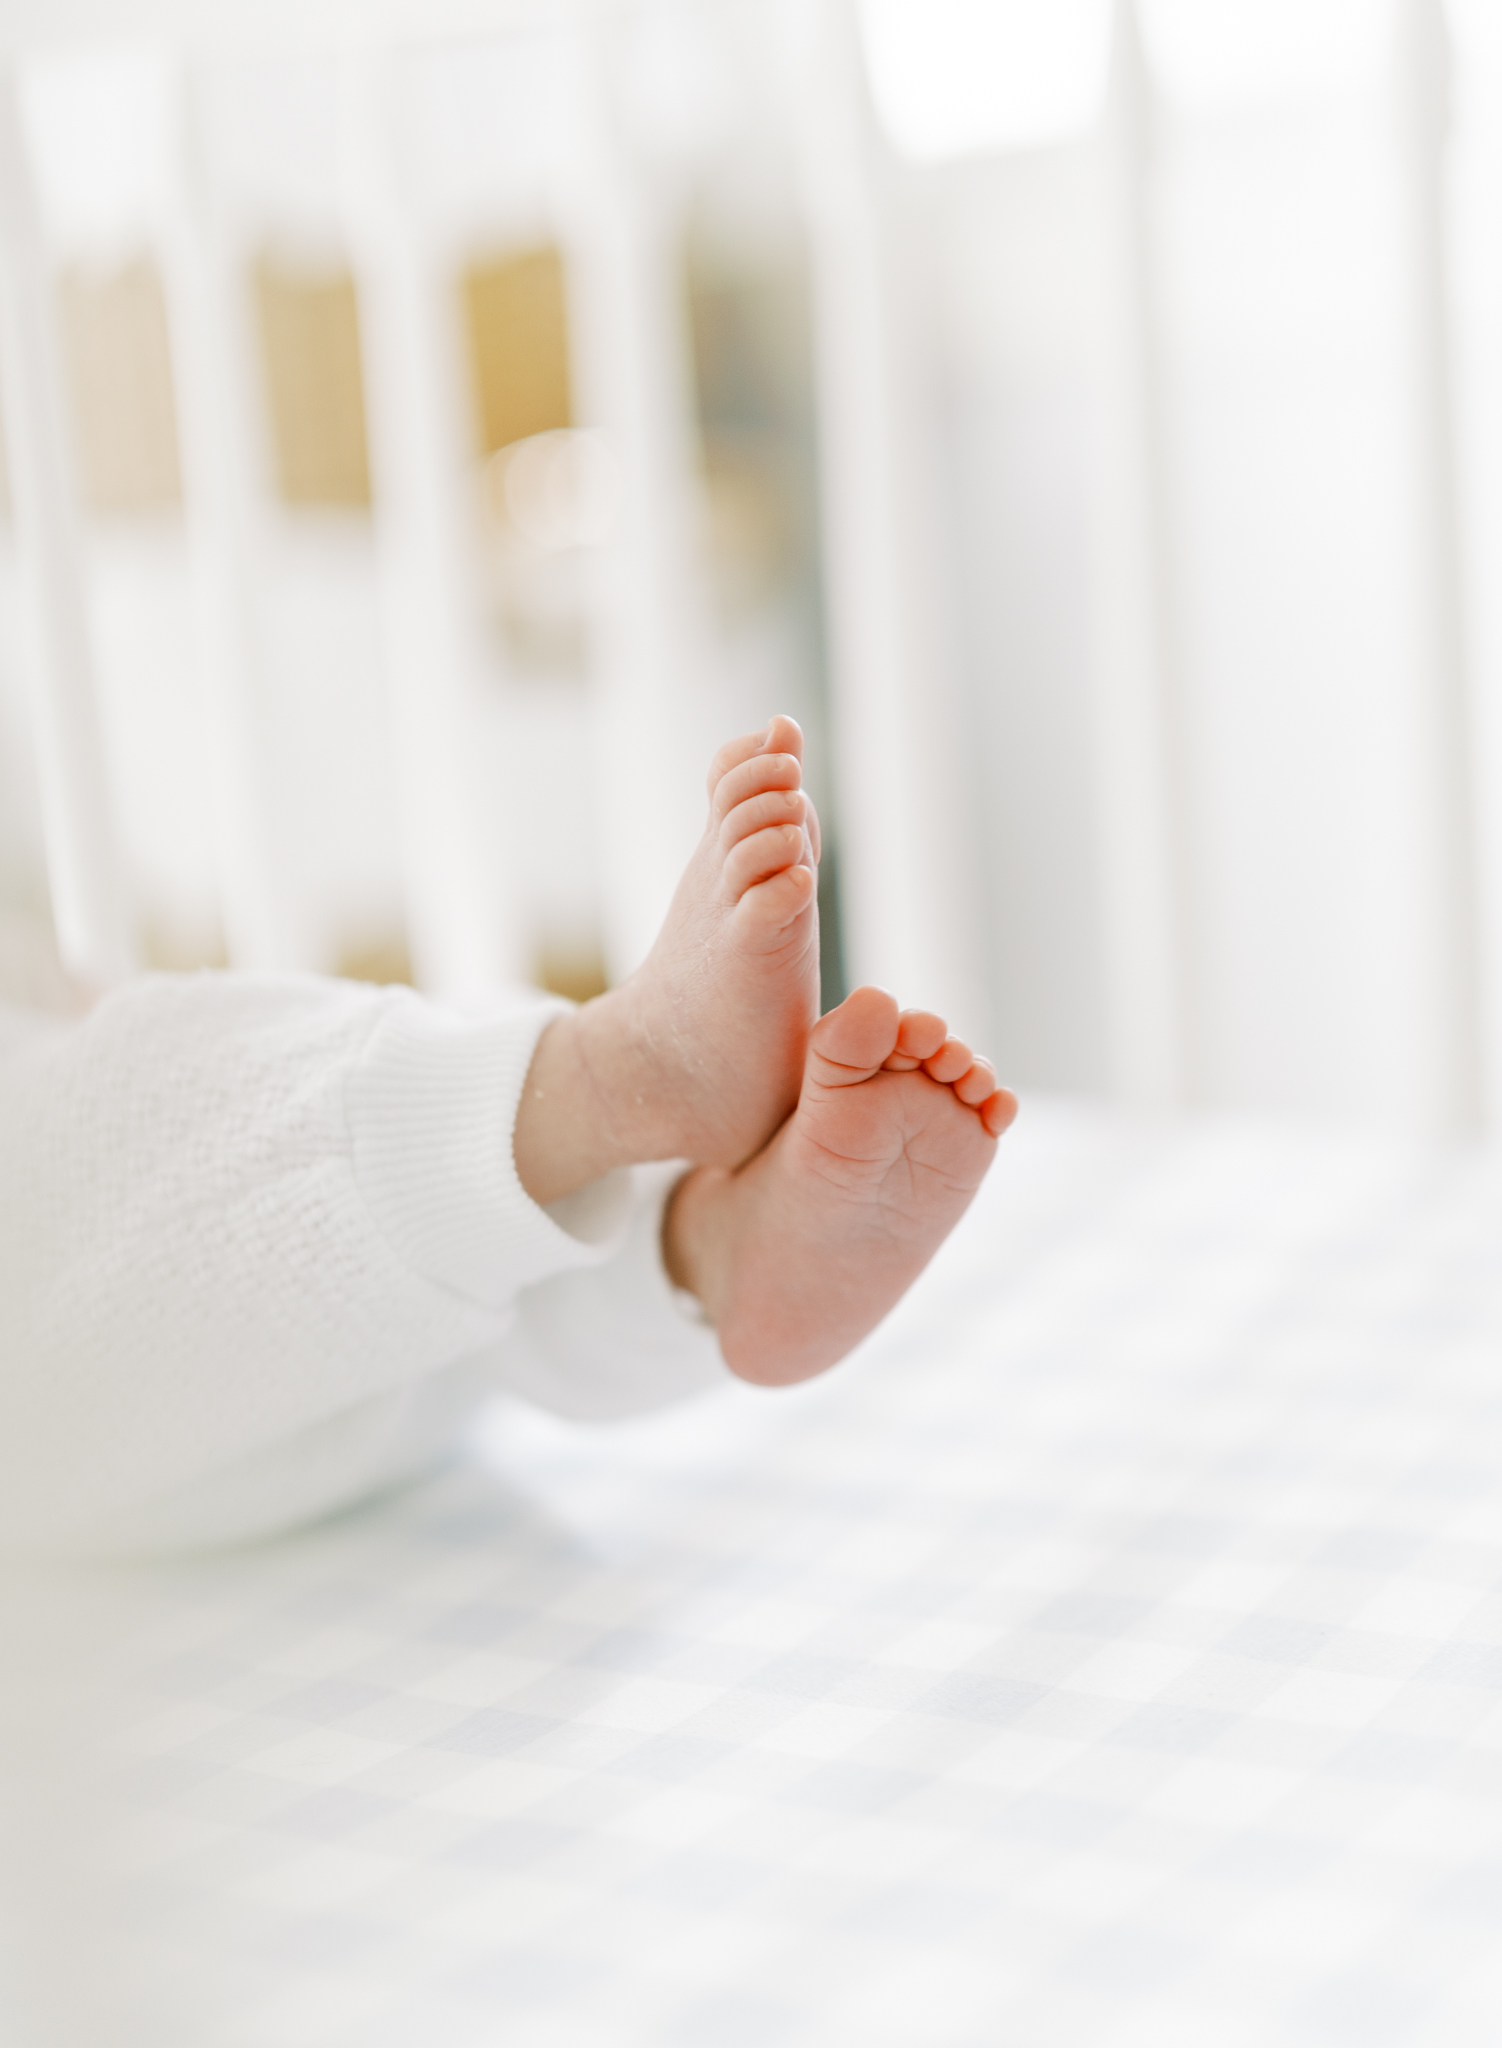 Tiny newborn feet kicking around in crib with plaid sheets